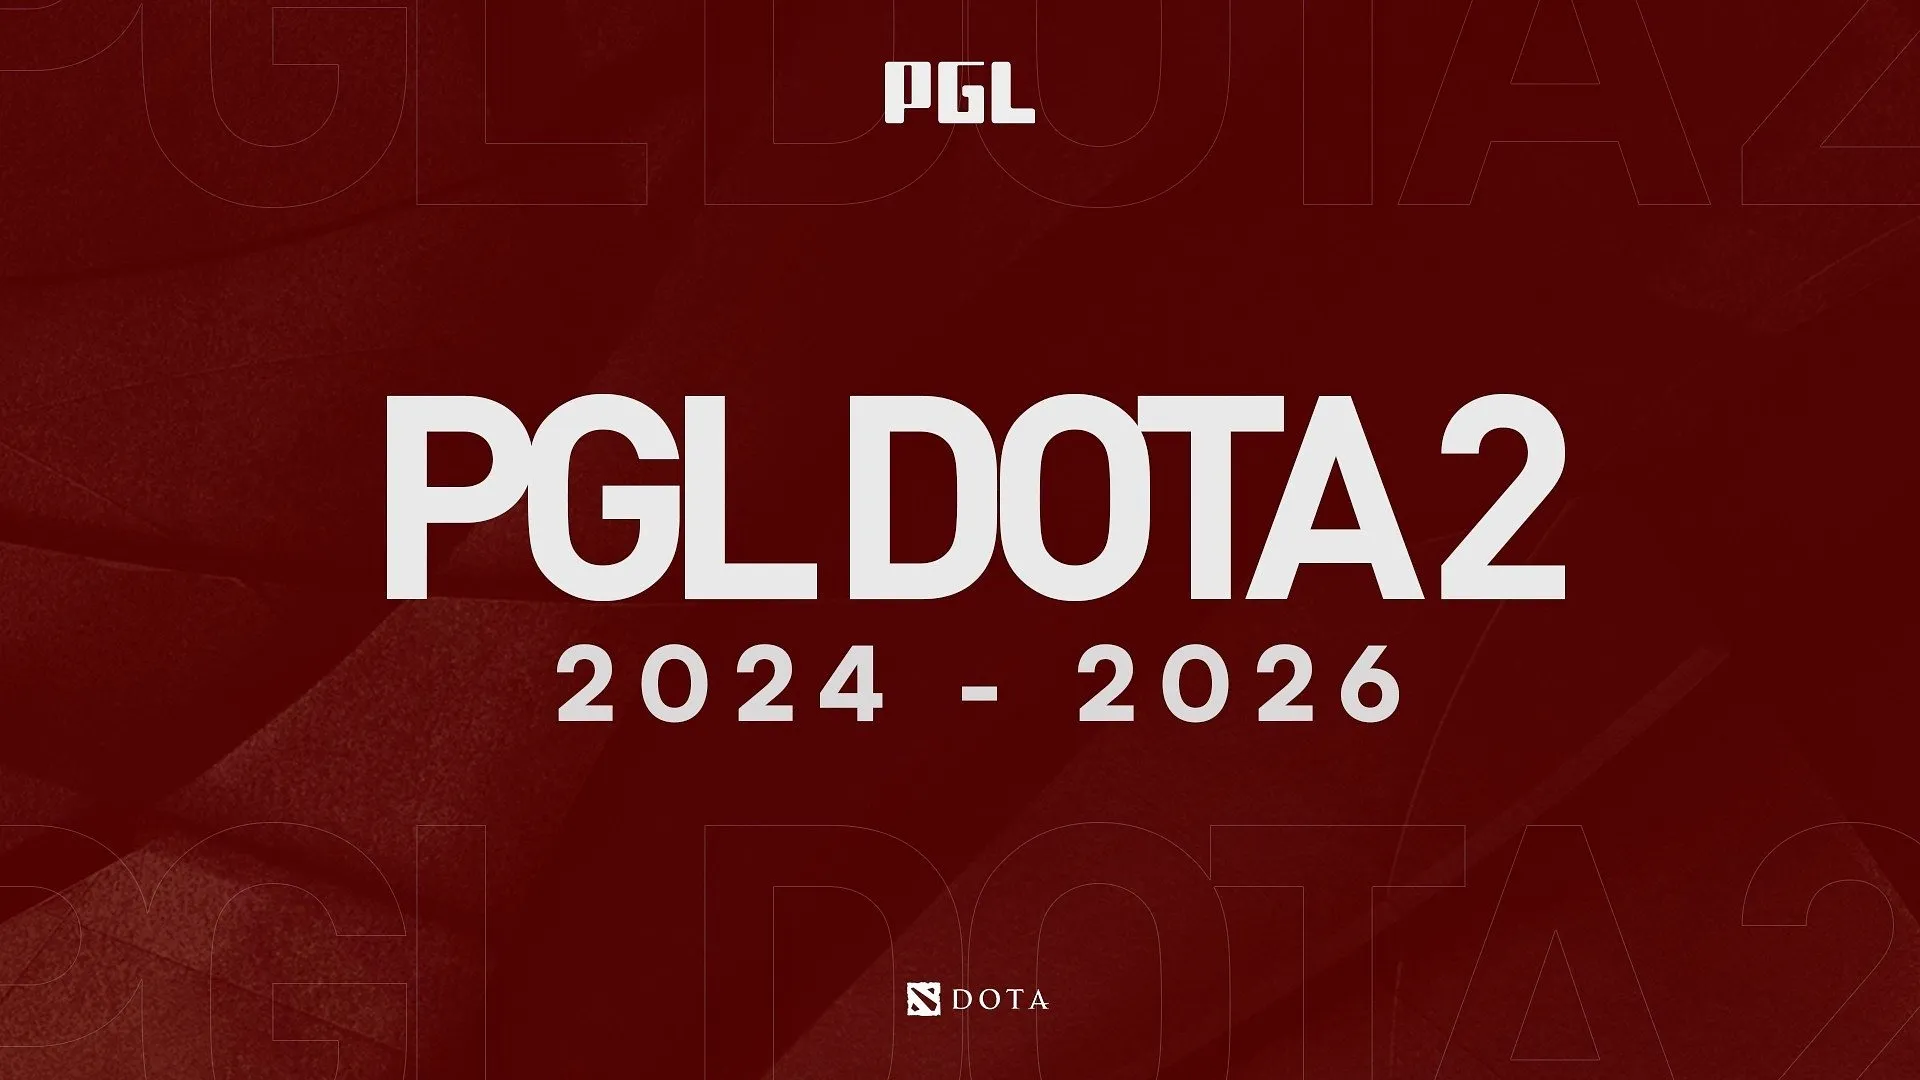 PGL bùng nổ Dota 2 với 8 giải đấu trị giá 1 triệu USD